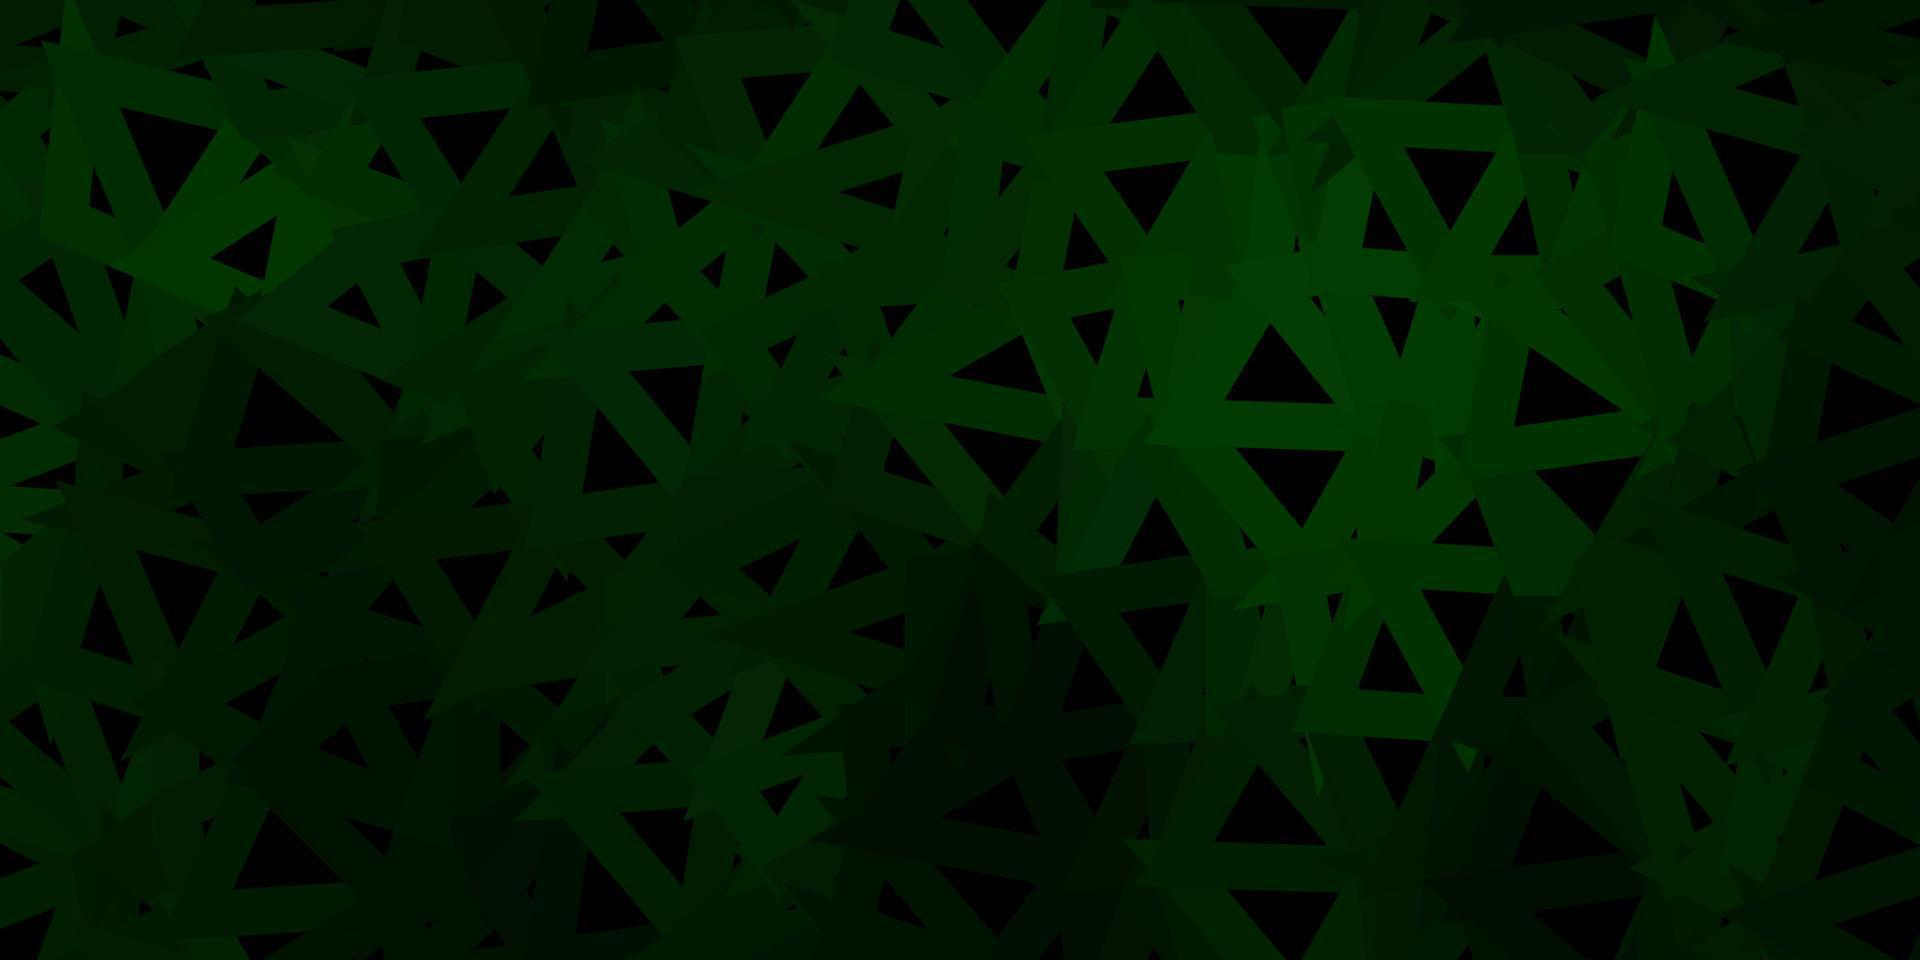 textura de triângulo poli vetor verde escuro.